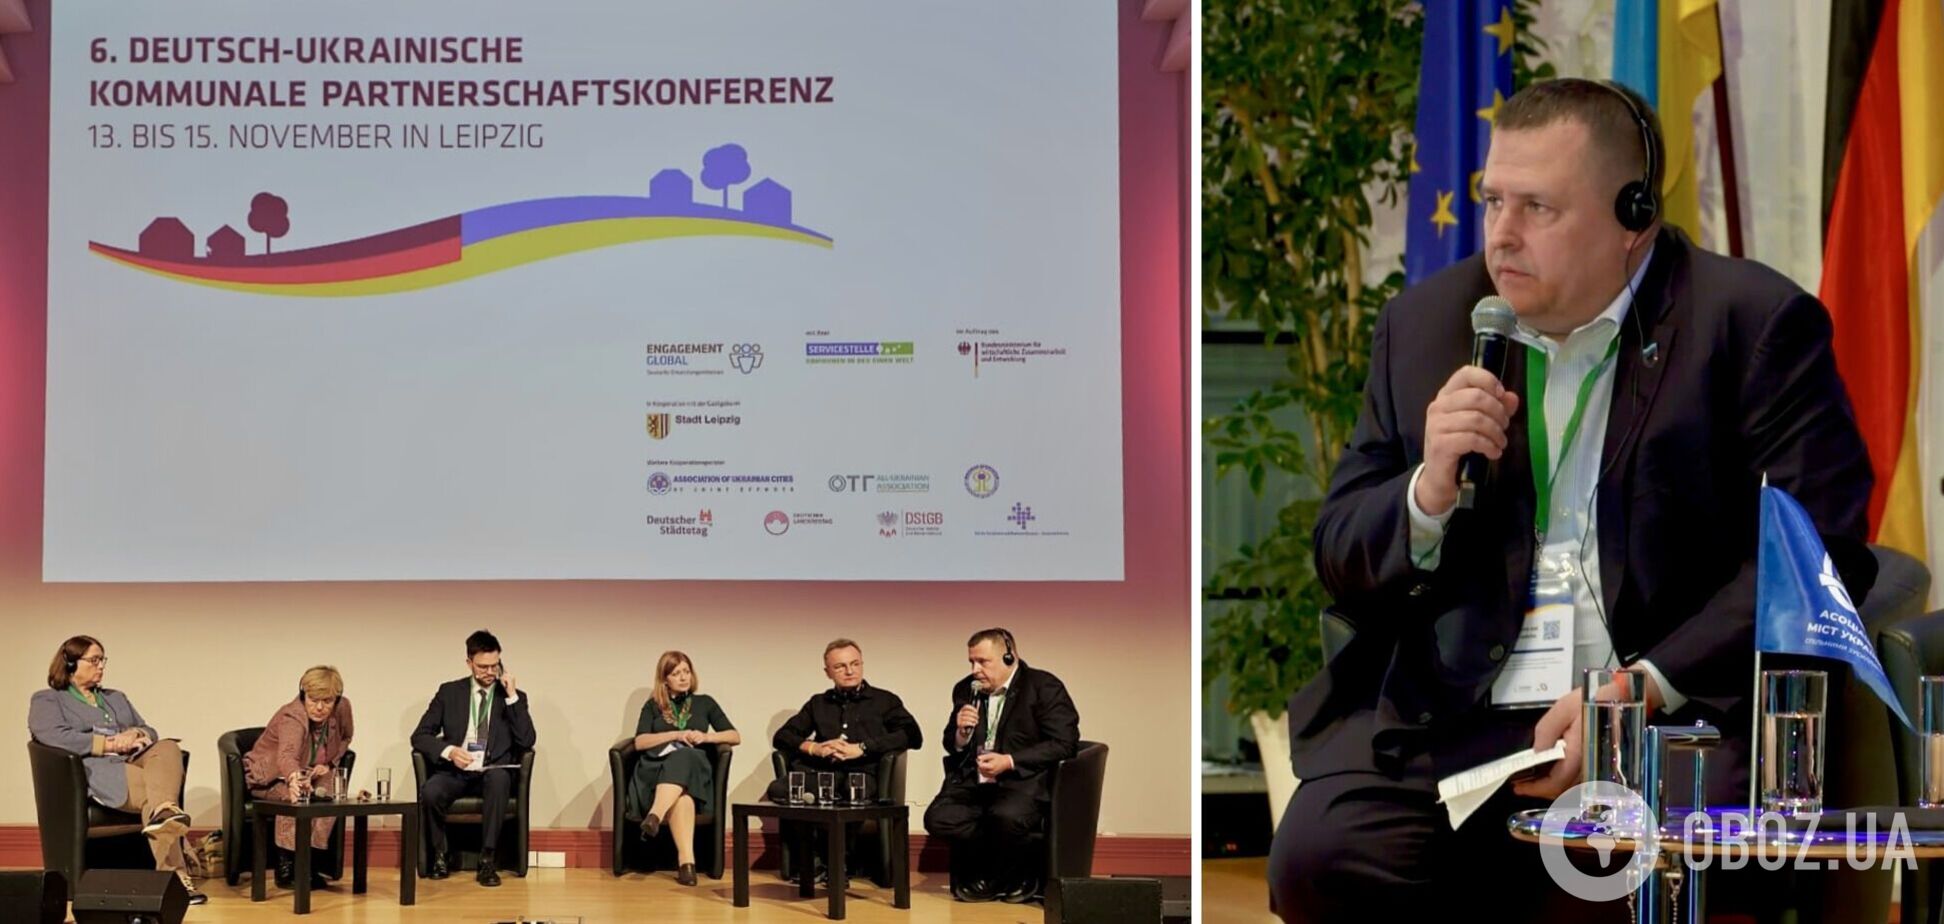 Ресурси, техніка та емпатія: Філатов на конференції у Лейпцигу сказав, чого найбільше потребують українці